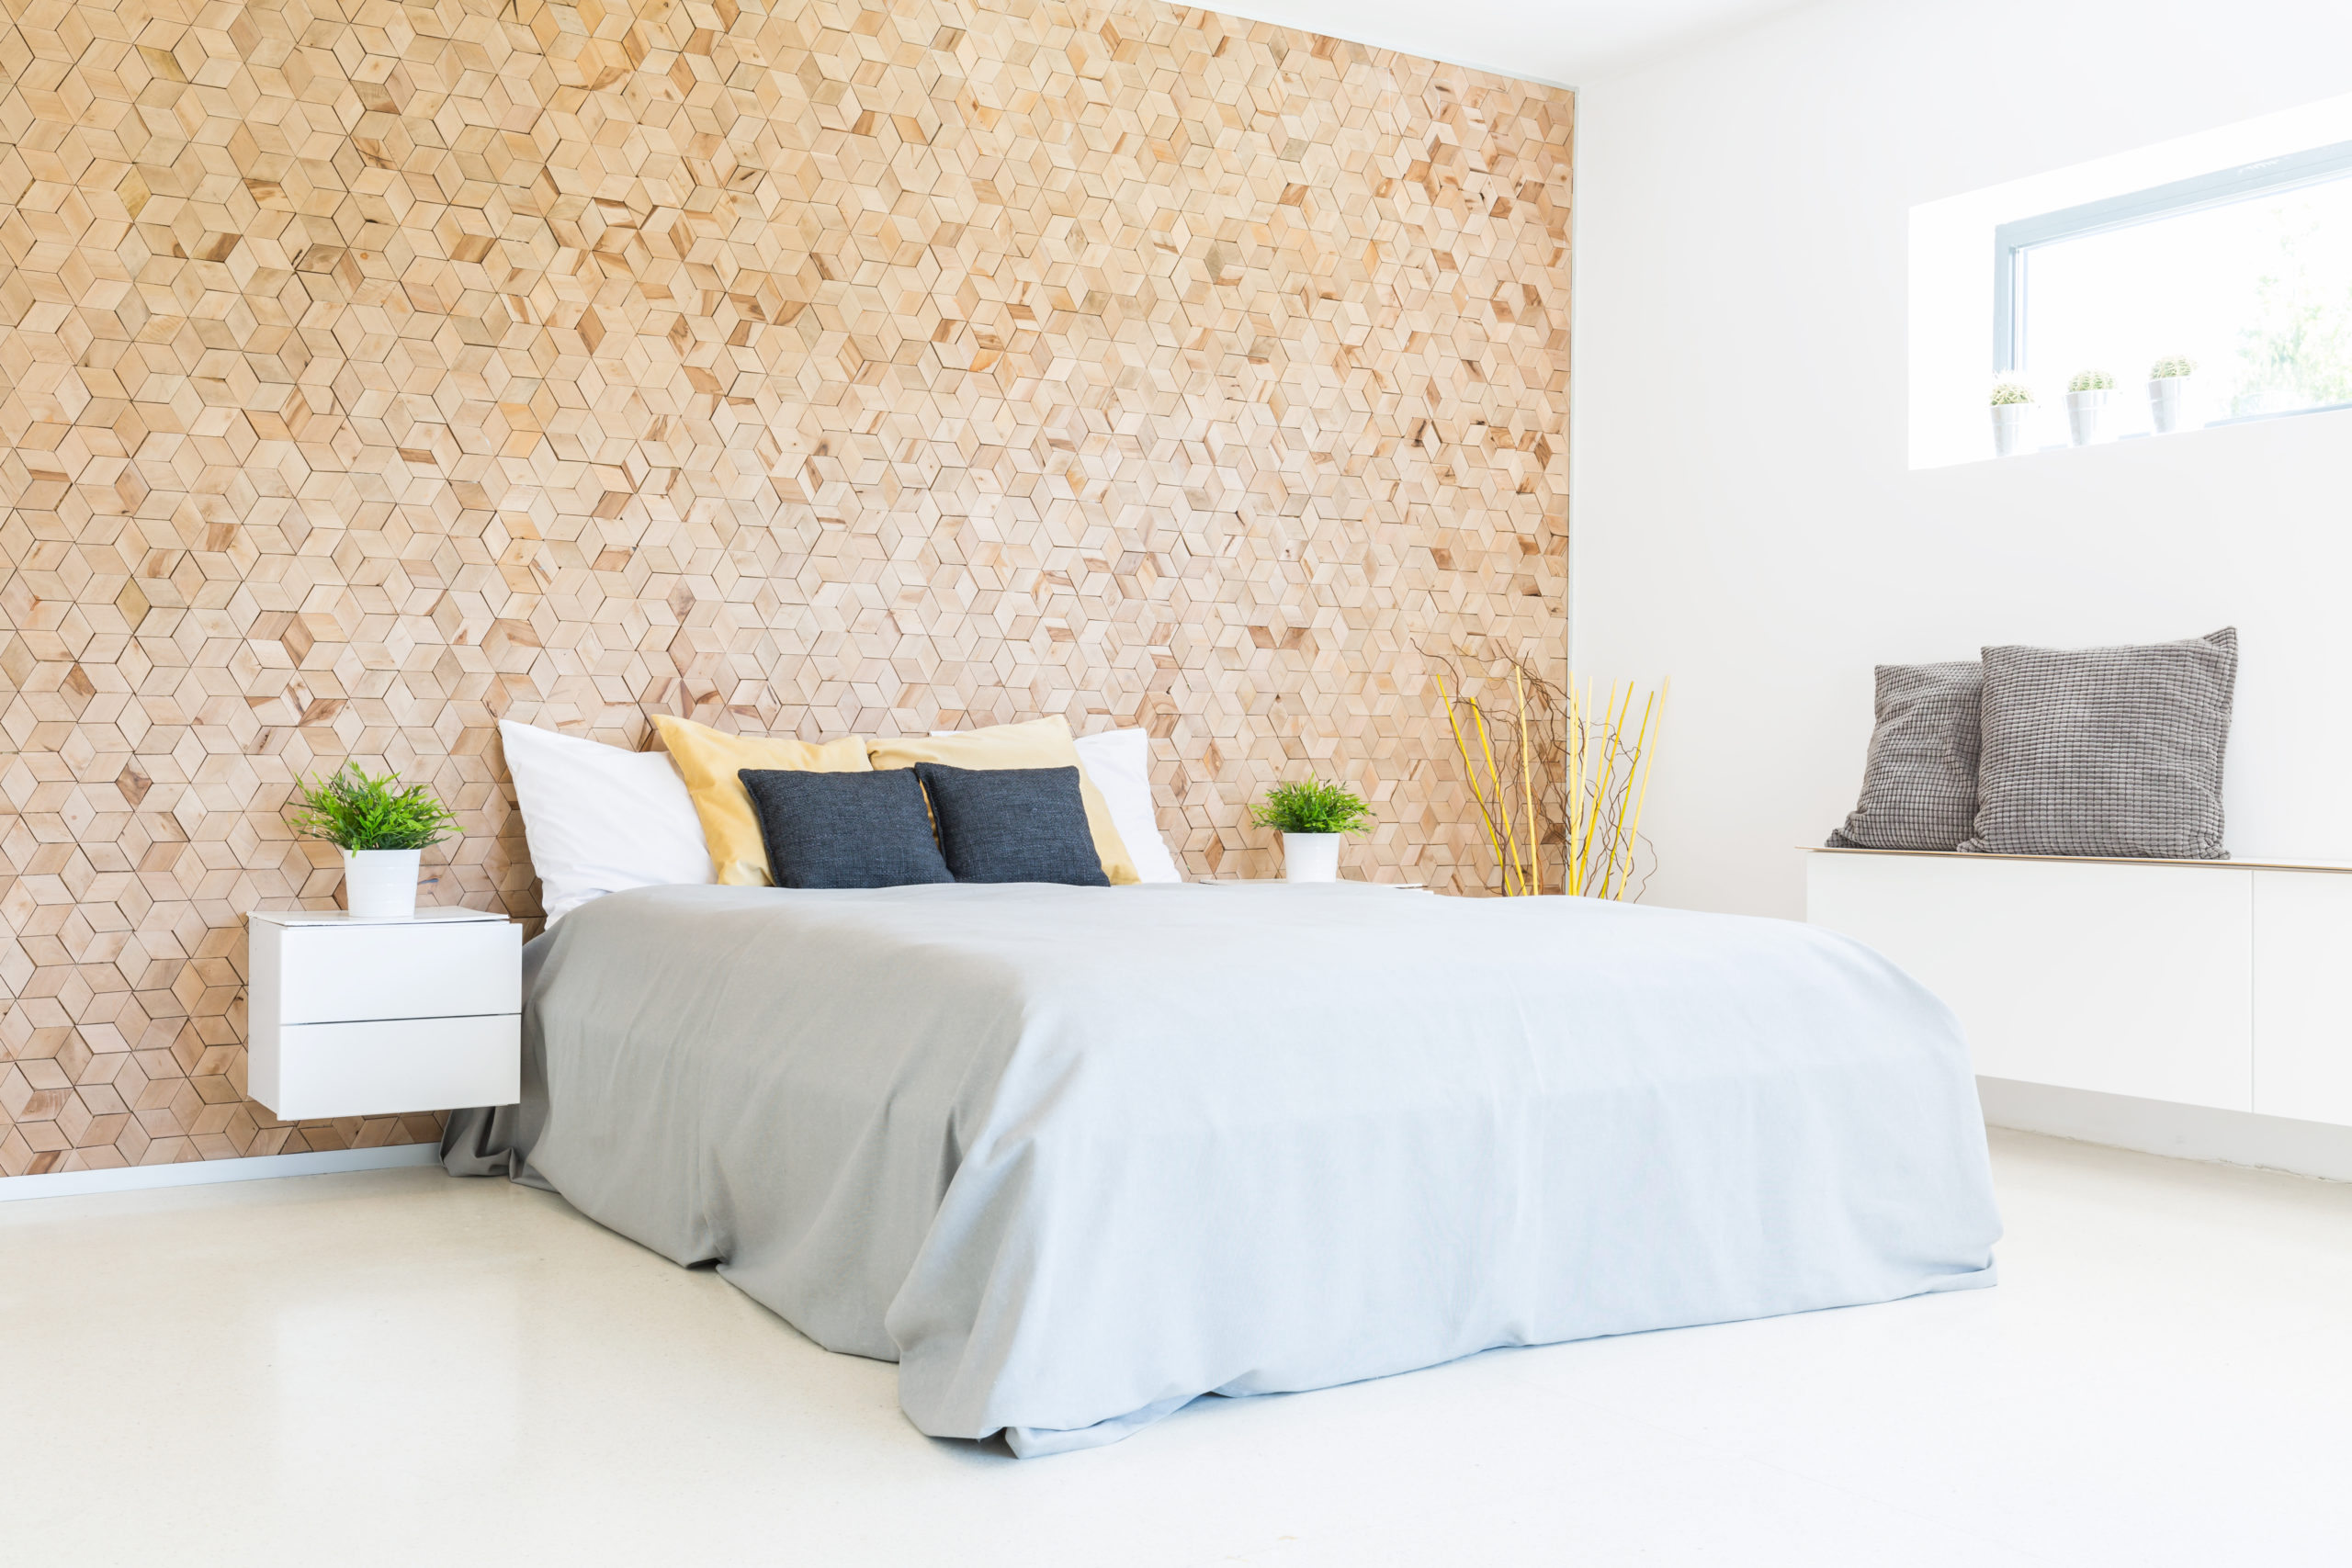 Minimalist-Bedroom-Ideas-featured-image